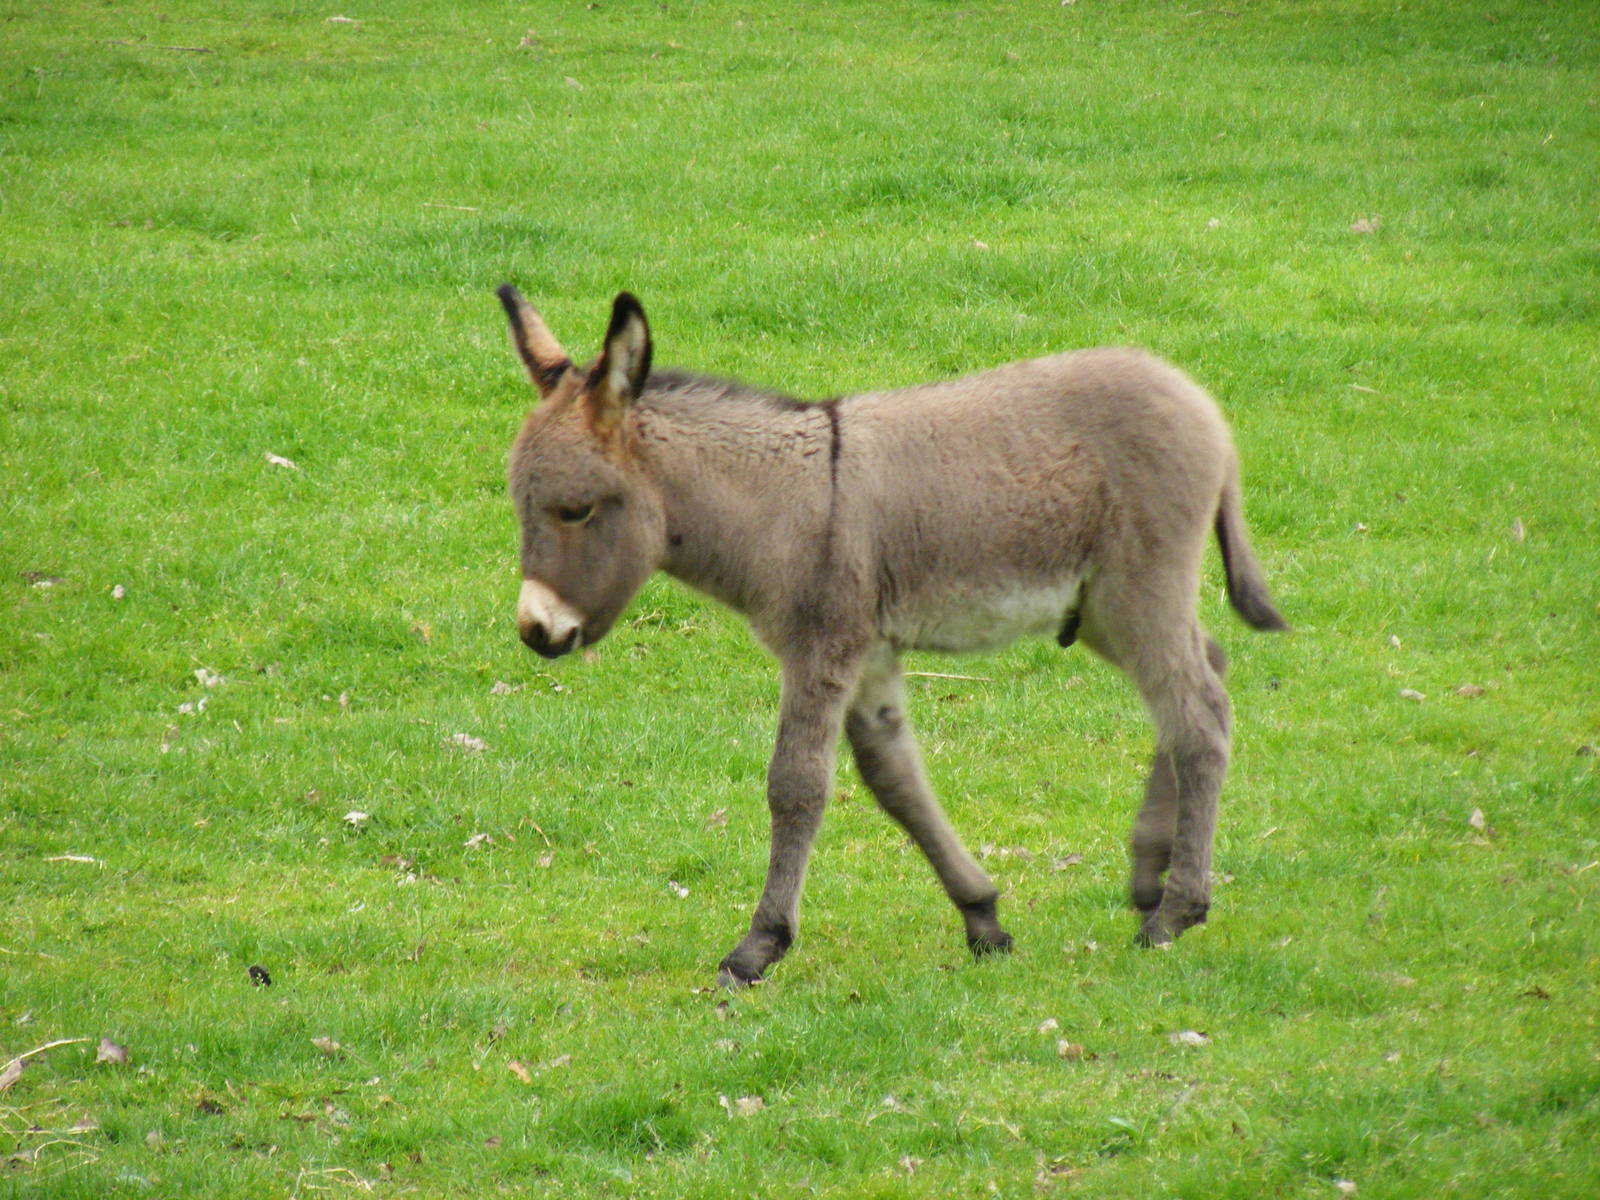 Donkey foal at Blair Drummond Safari Park, 19 May 2010. 